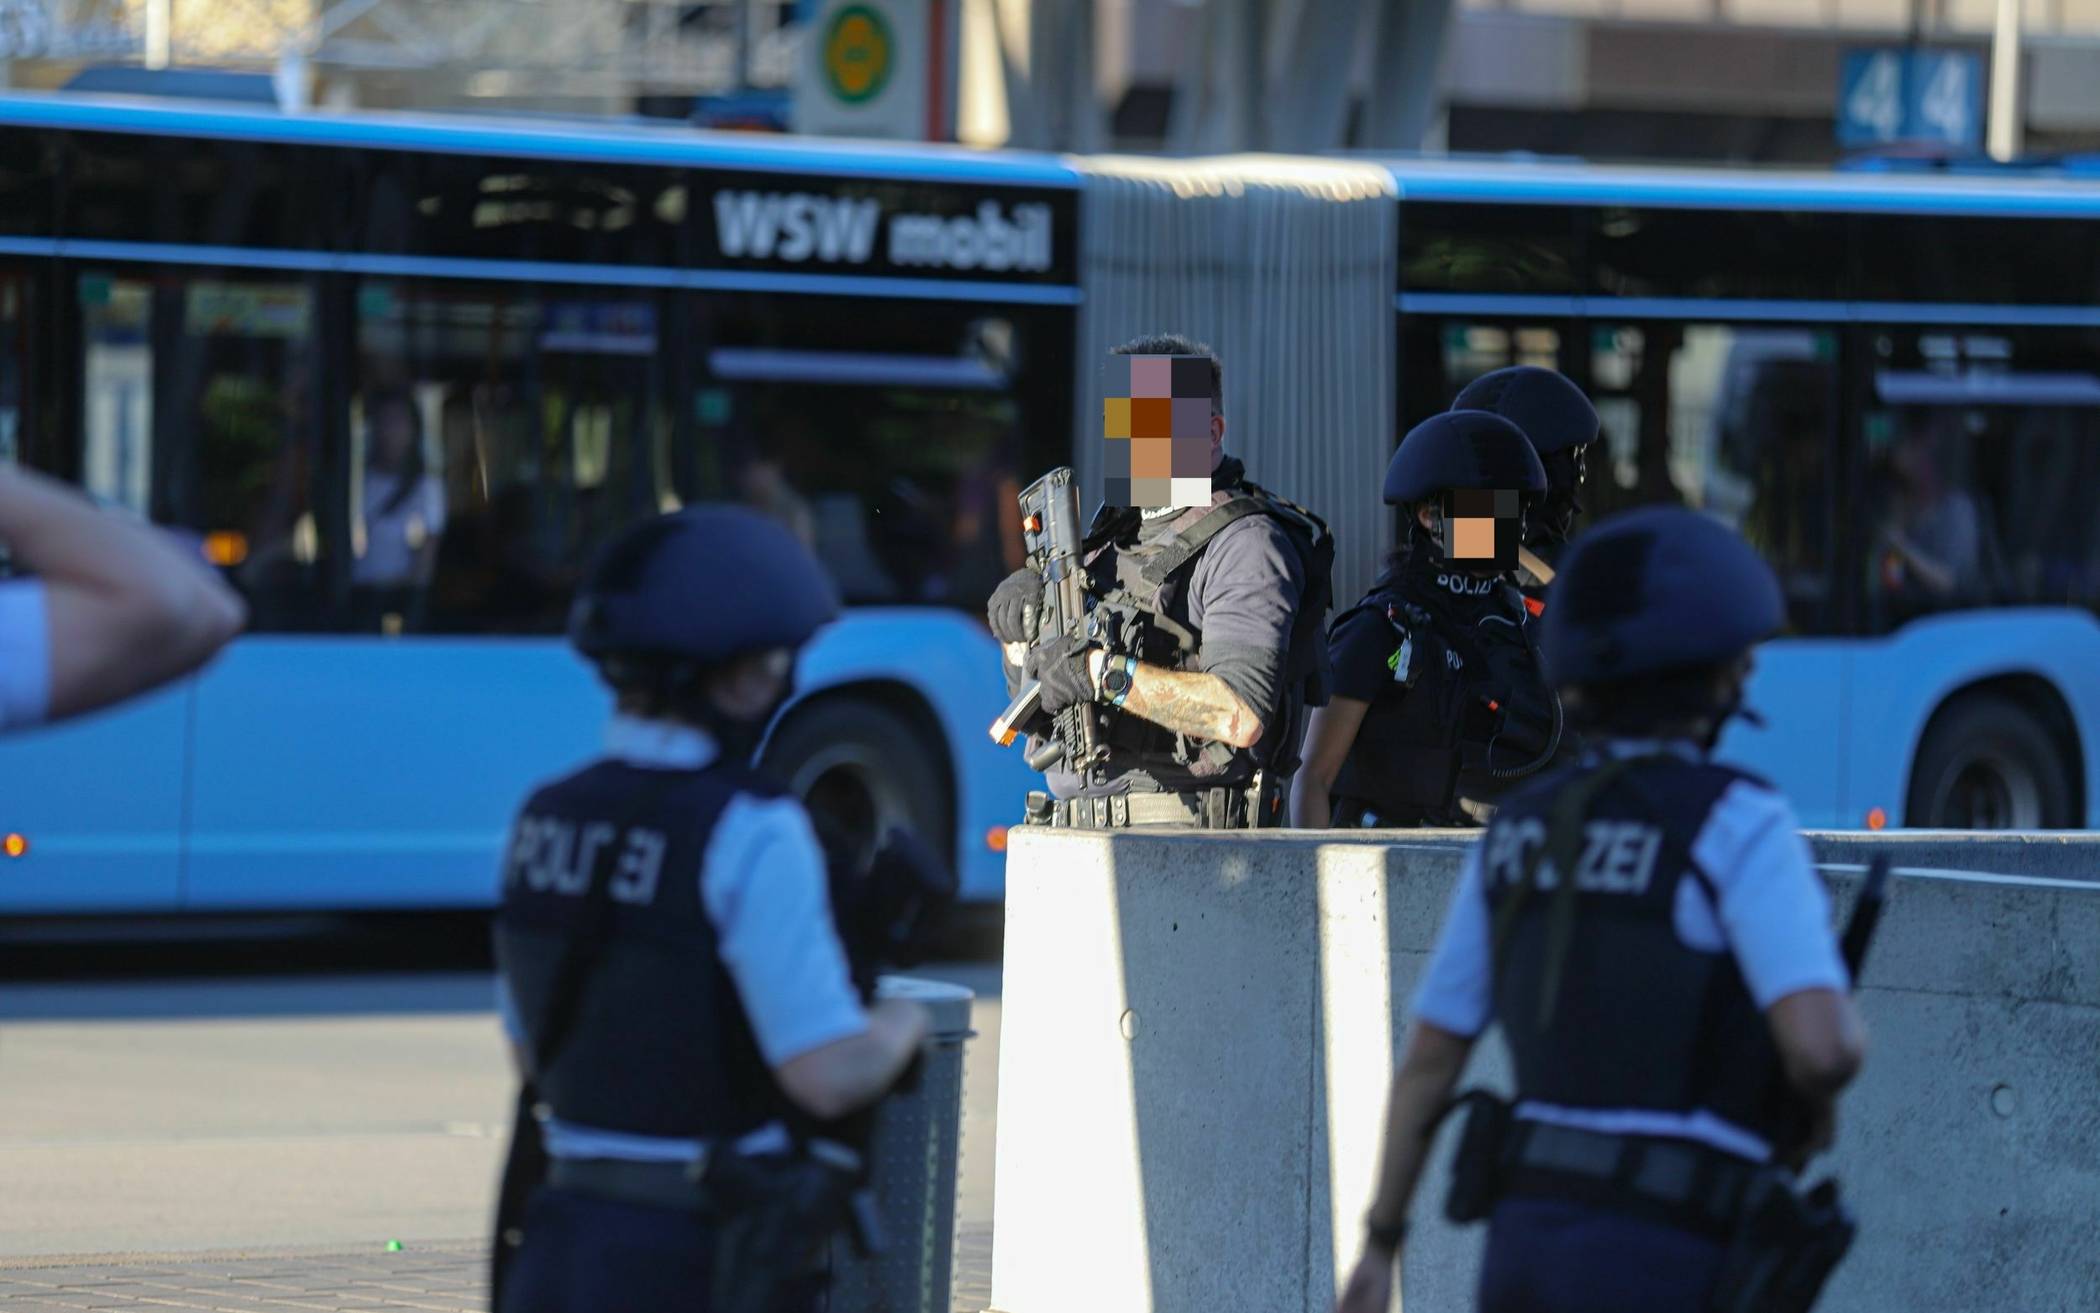 Bilder: Polizei-Einsatz am Wuppertaler Hauptbahnhof​